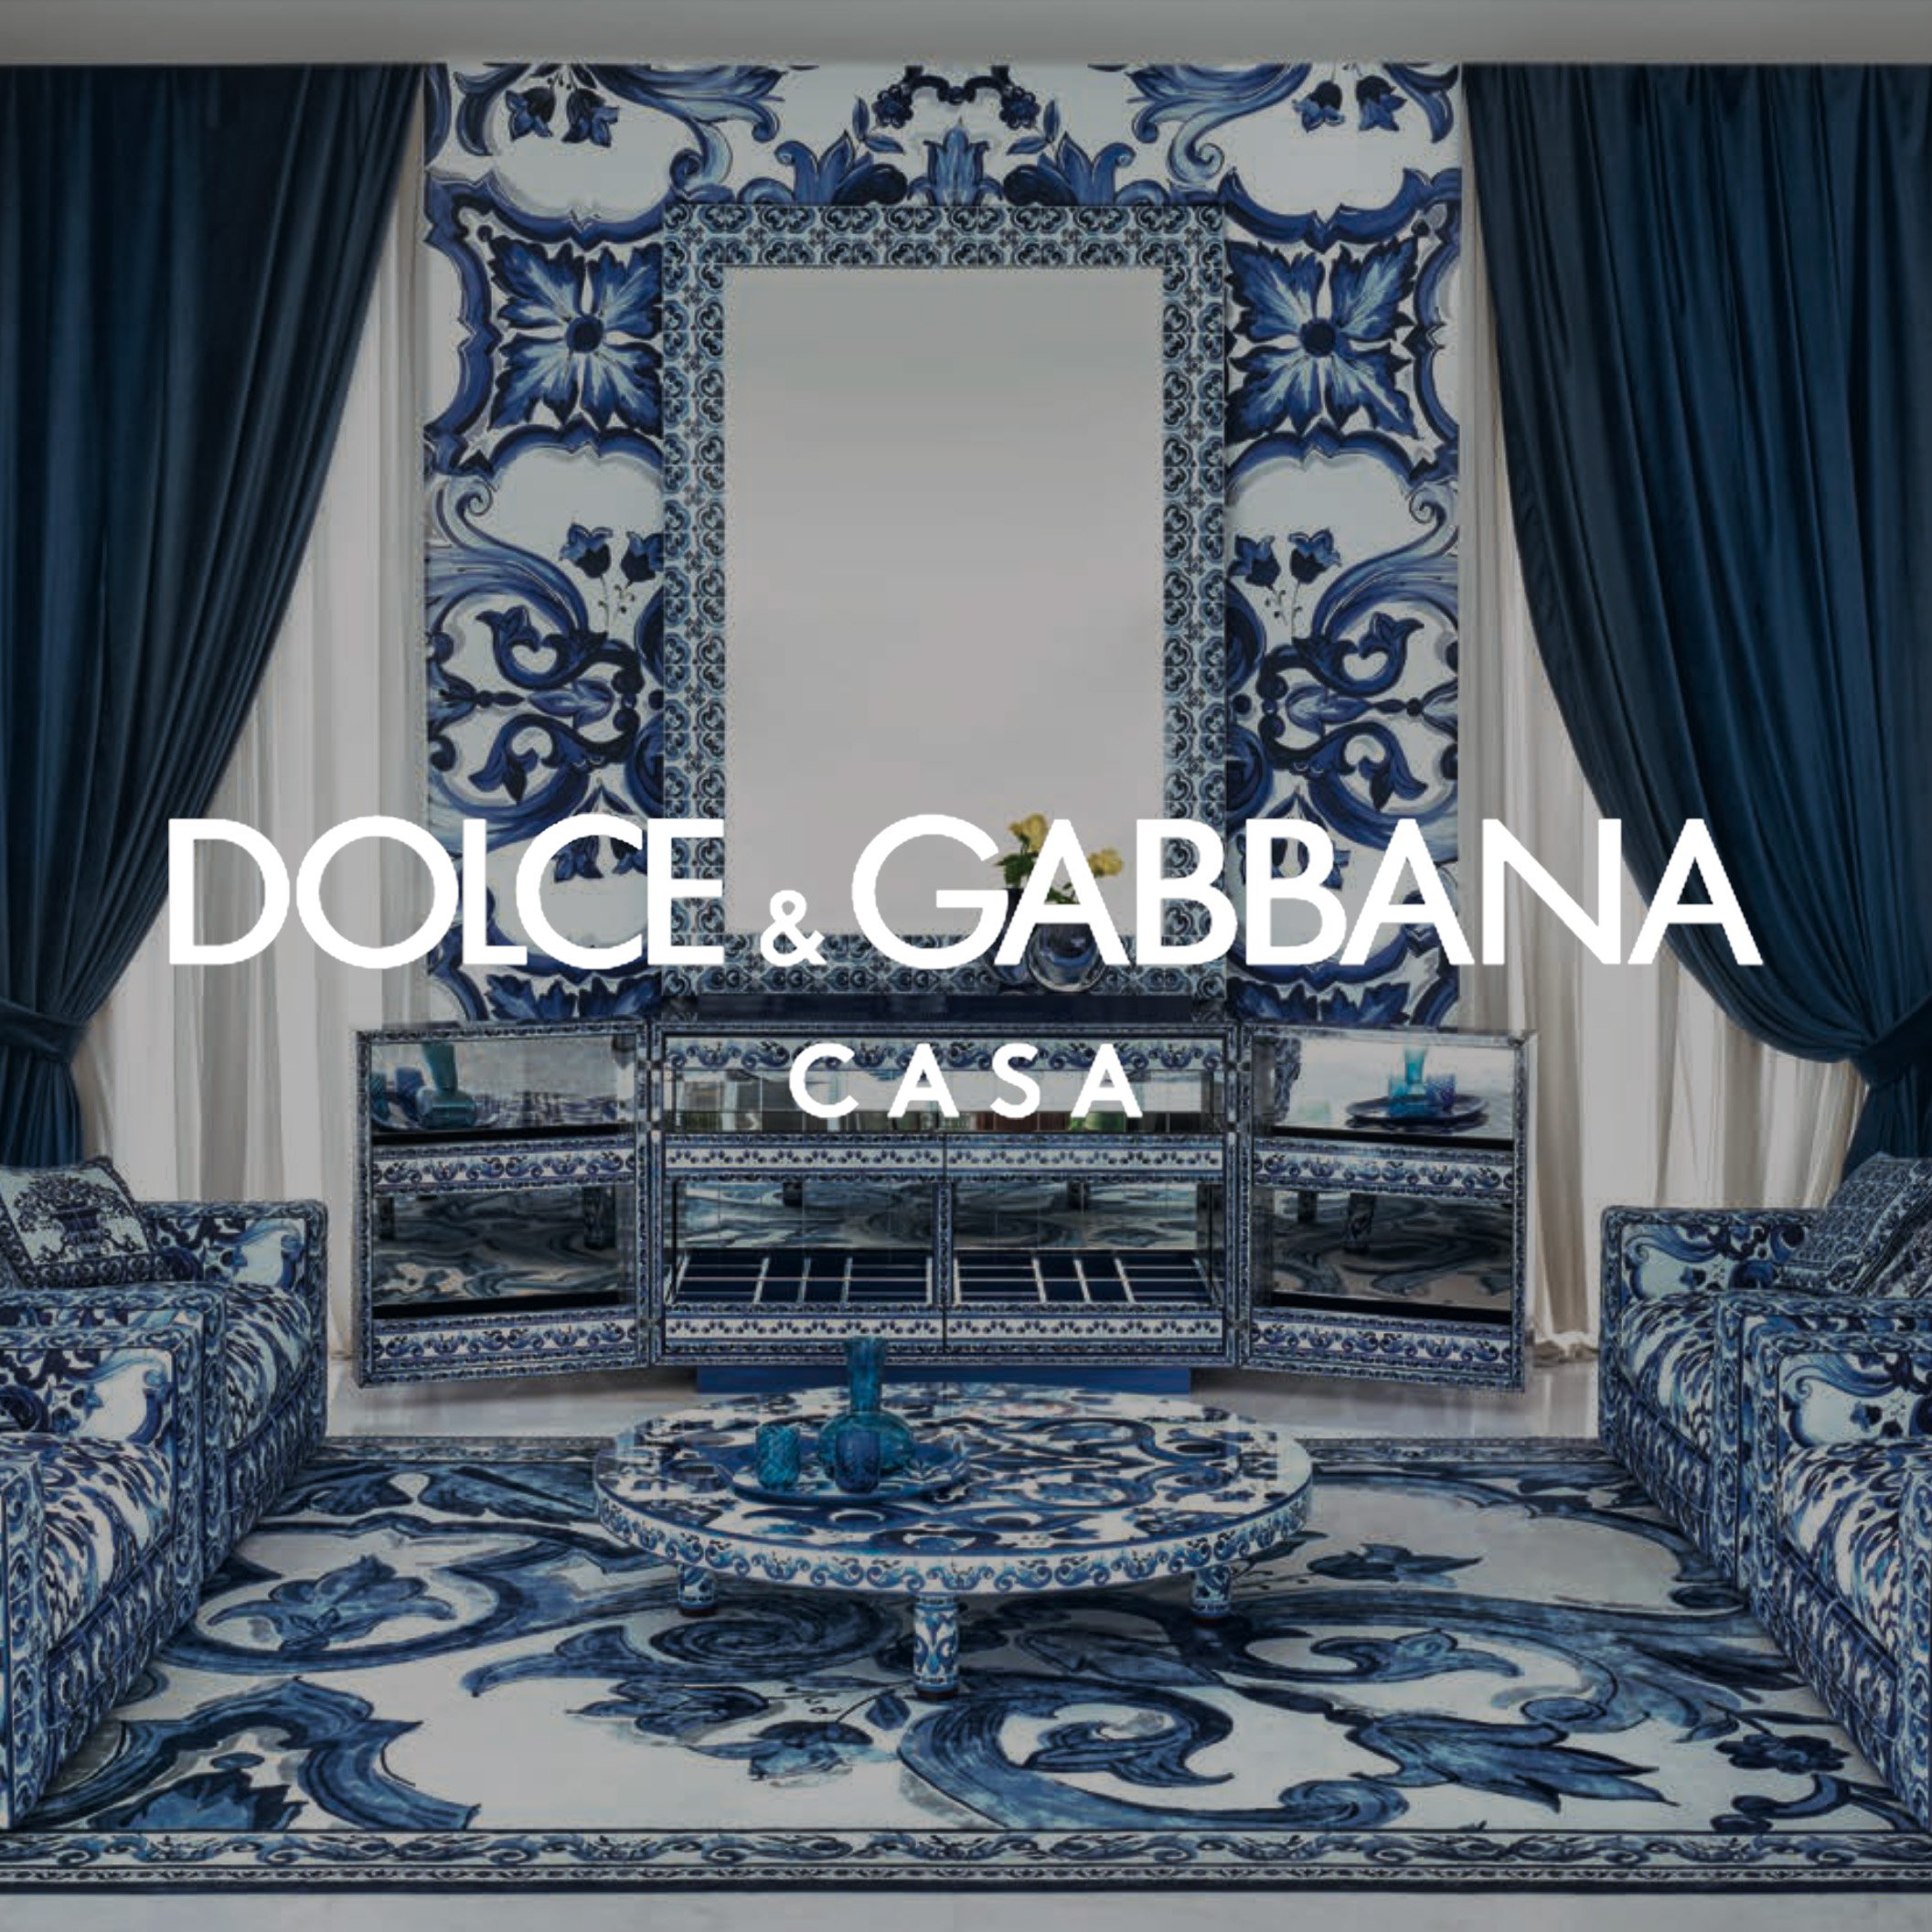 DOLCE & GABBANA CASA — Palazzo Collezioni